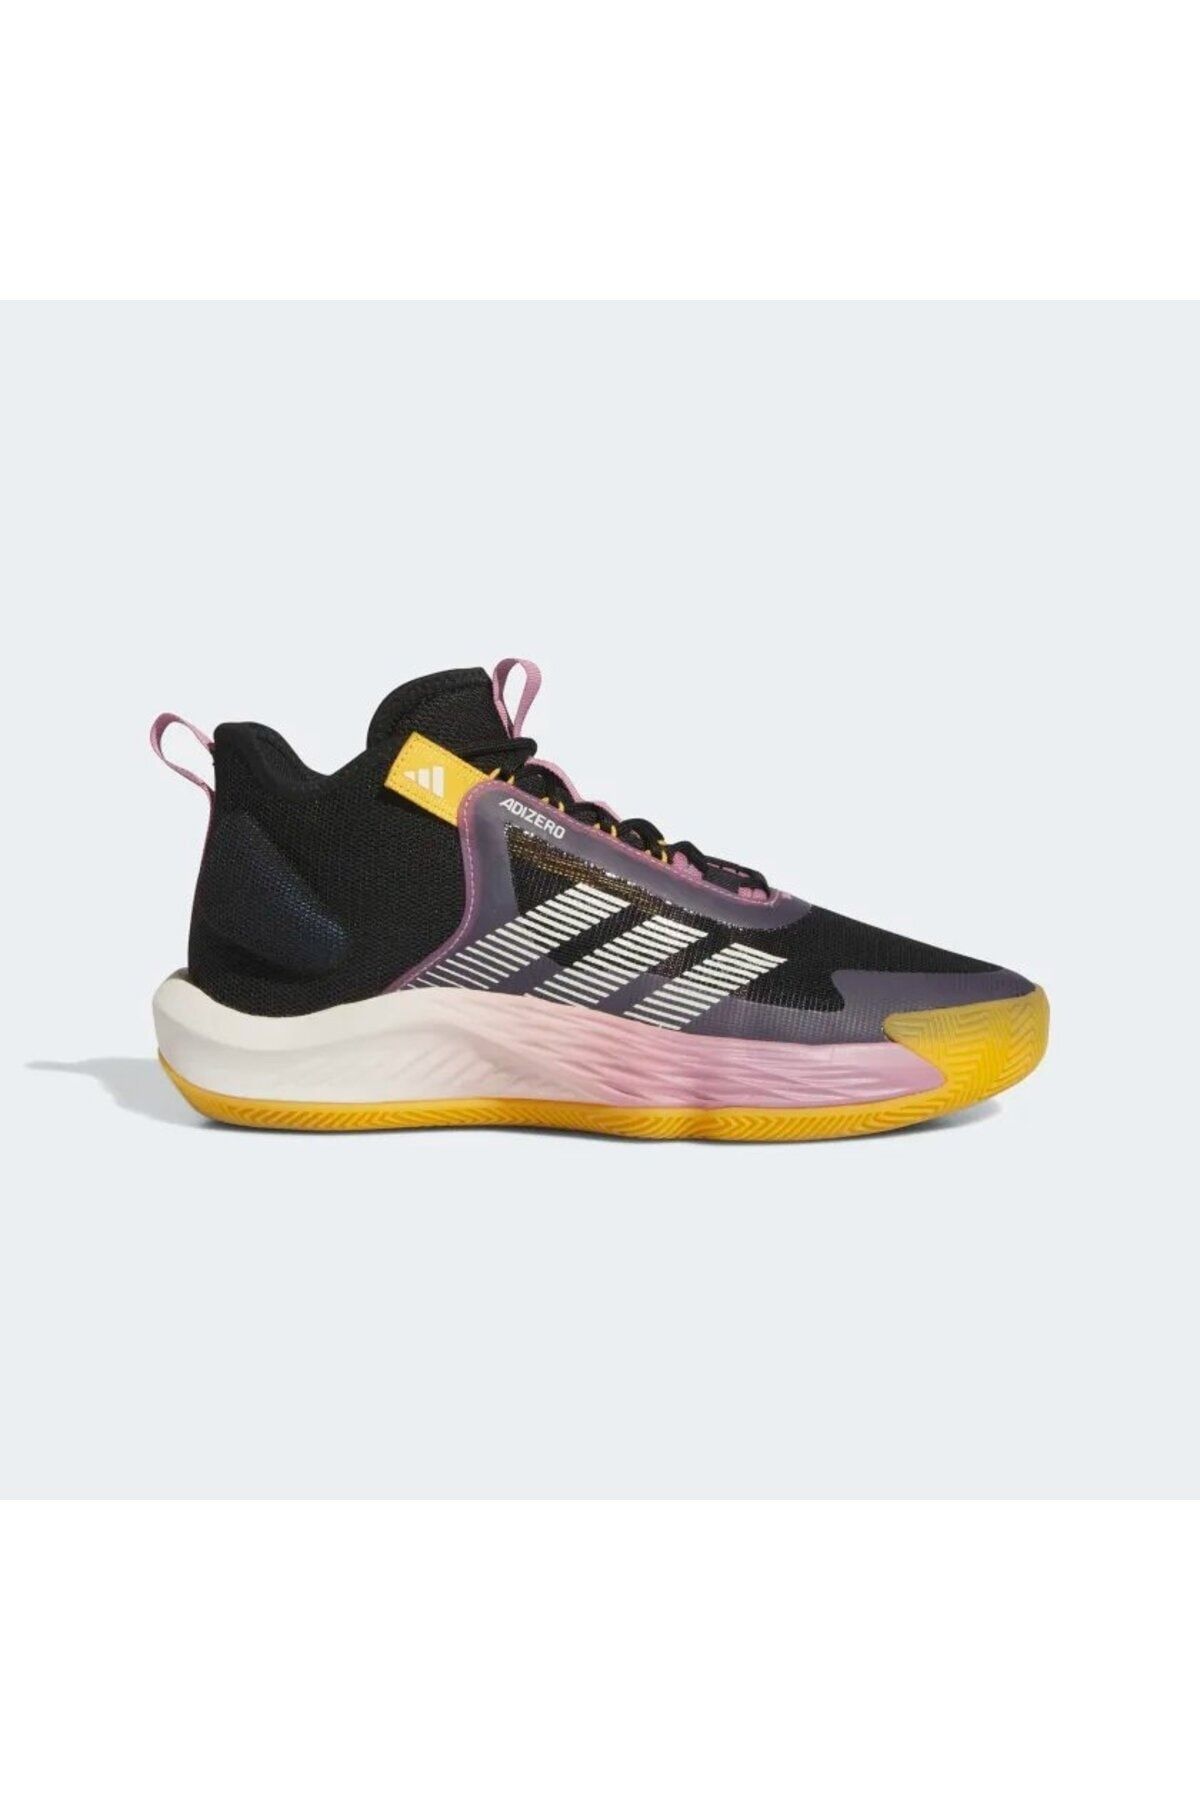 adidas Adizero Select SİYAH Erkek Basketbol Ayakkabısı